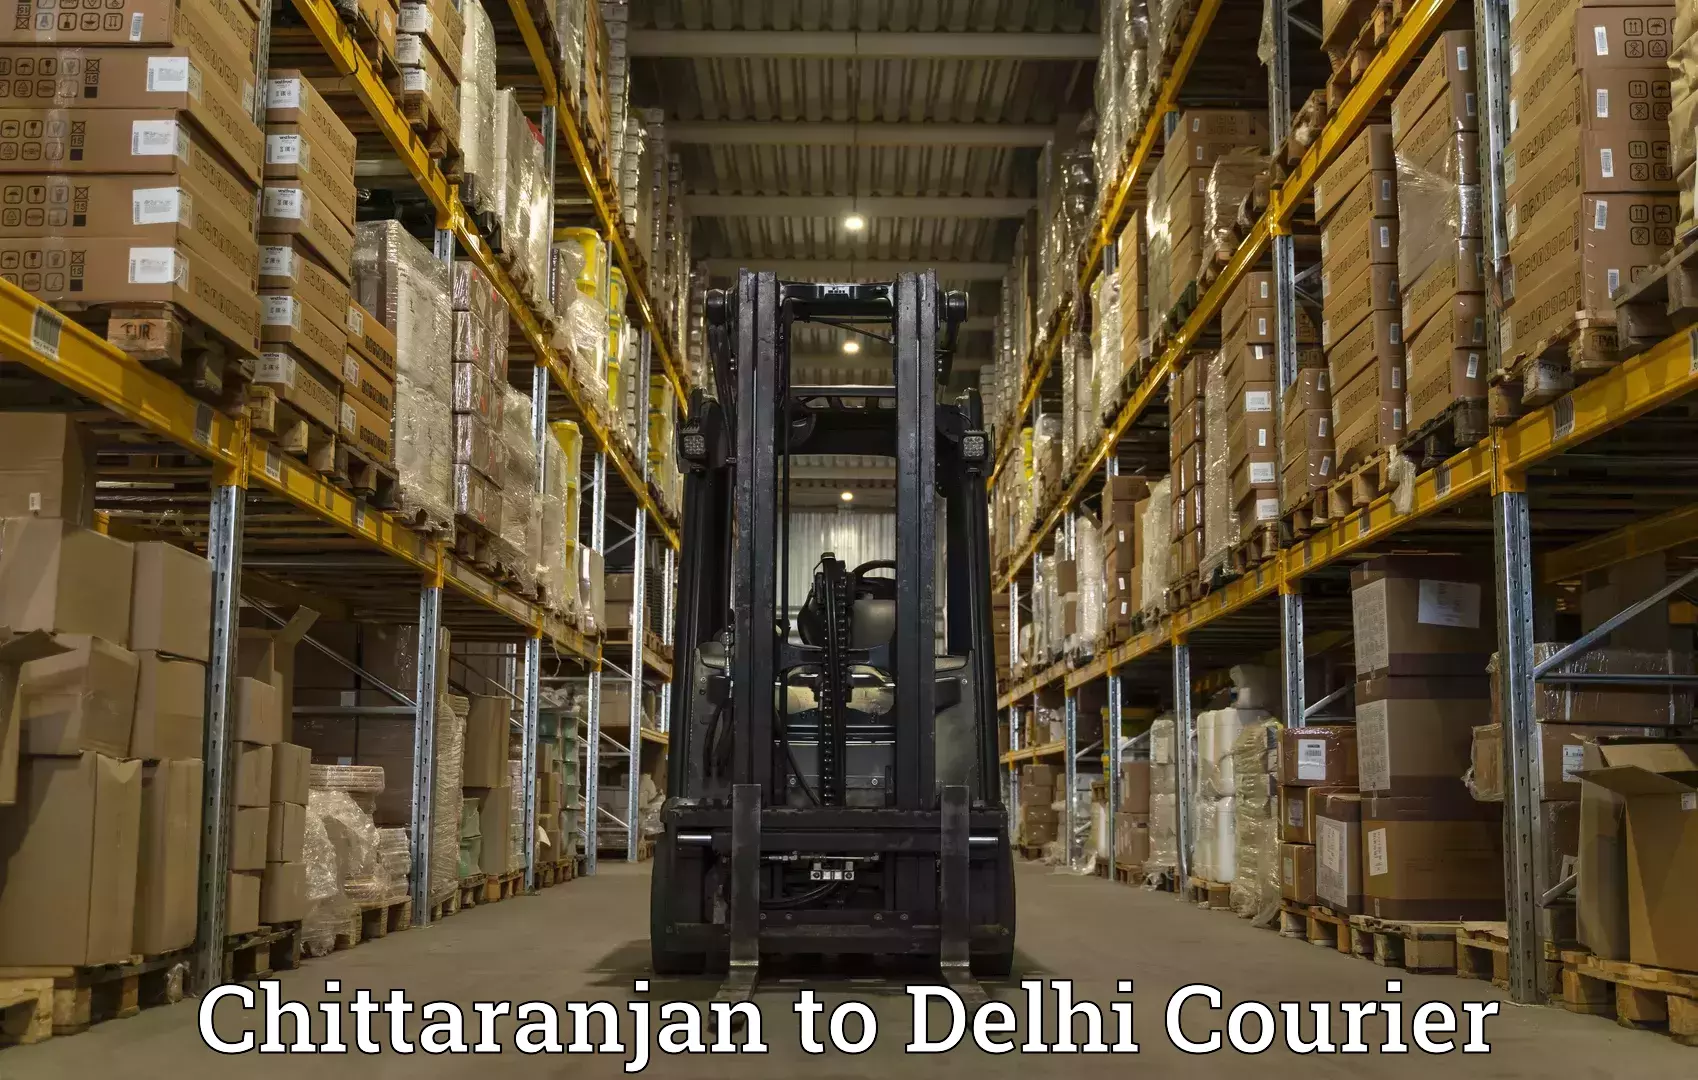 High-priority parcel service in Chittaranjan to Delhi